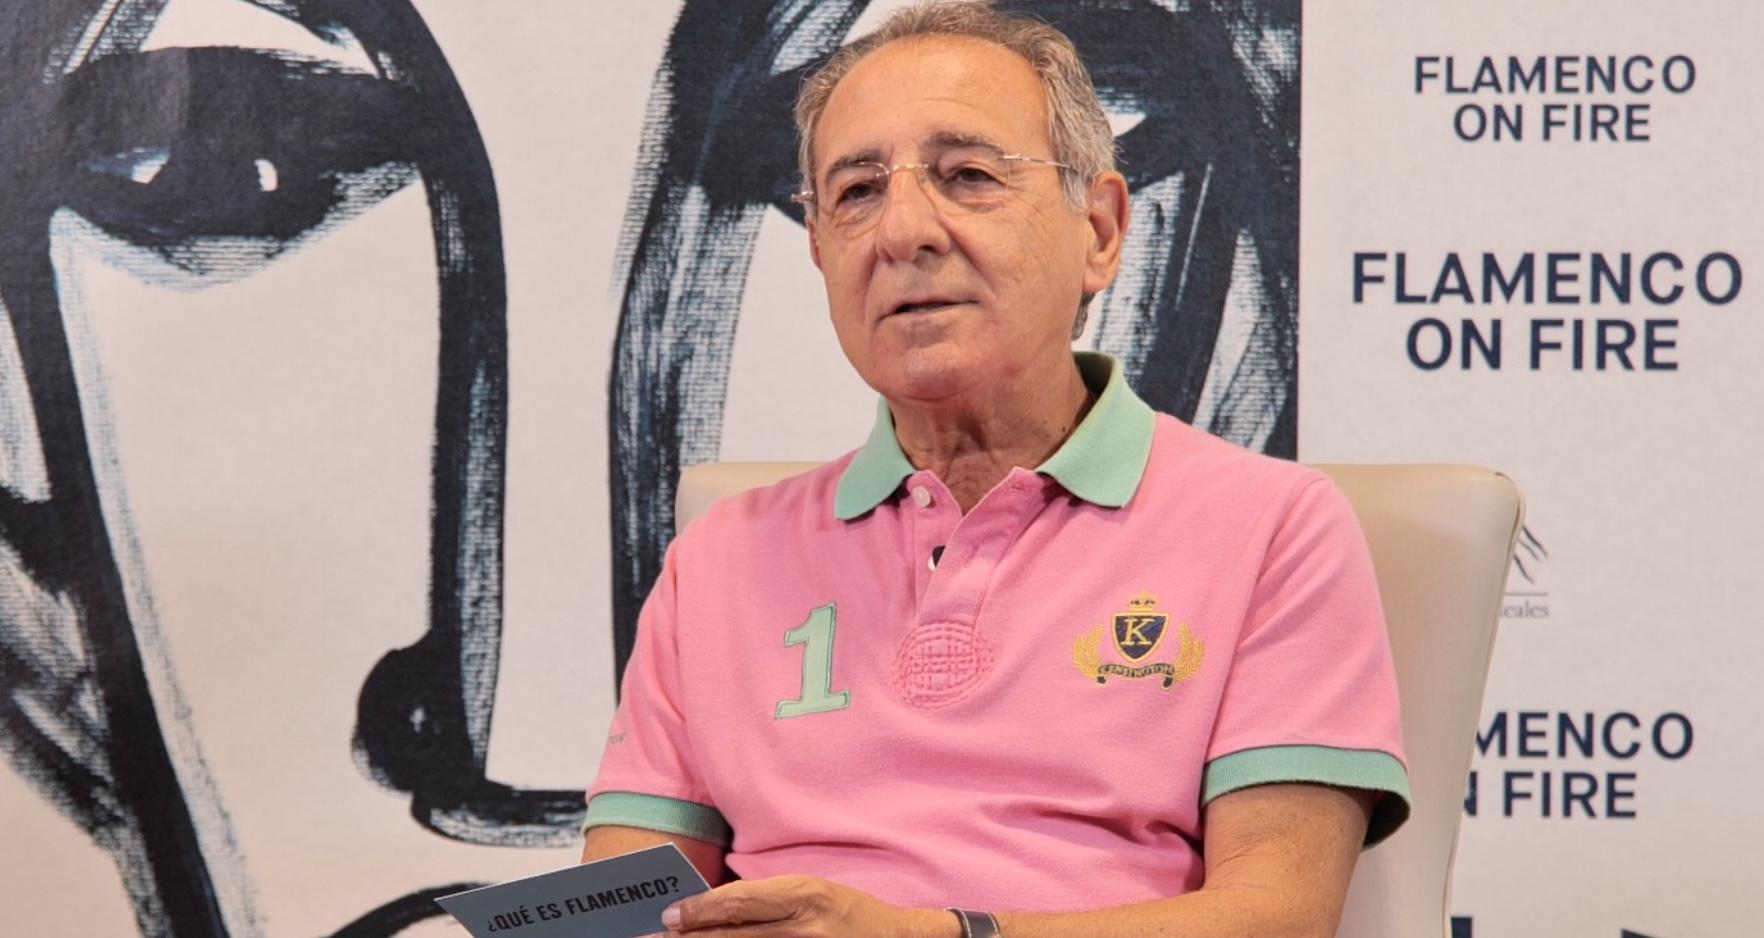 Manuel Martín Martín dará lectura al manifiesto en defensa del flamenco en Jerez